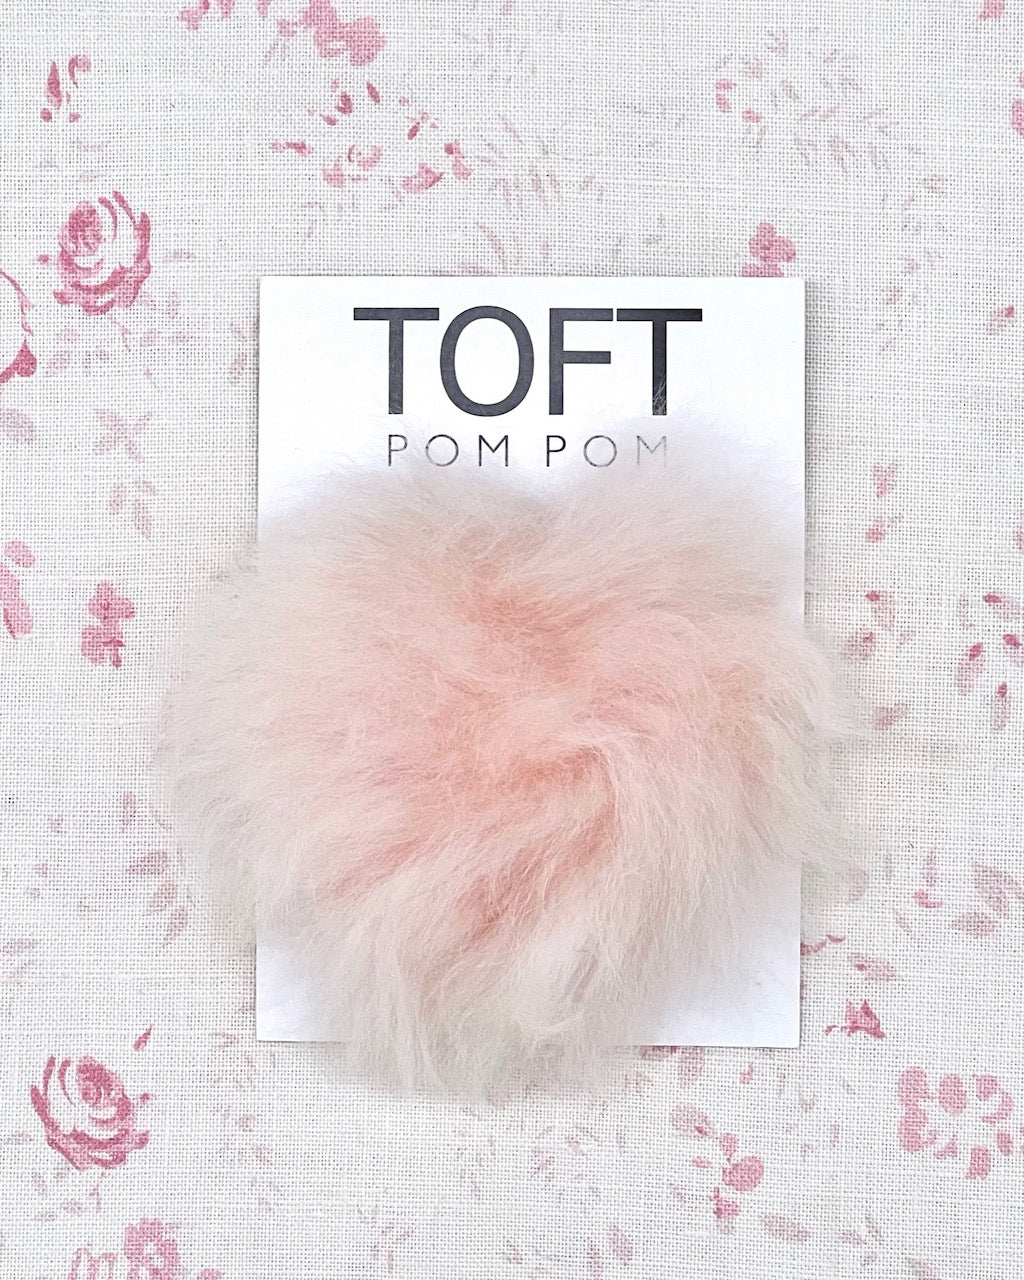 TOFT Ethical Alpaca Fur Hat Pom Pom - Coloured